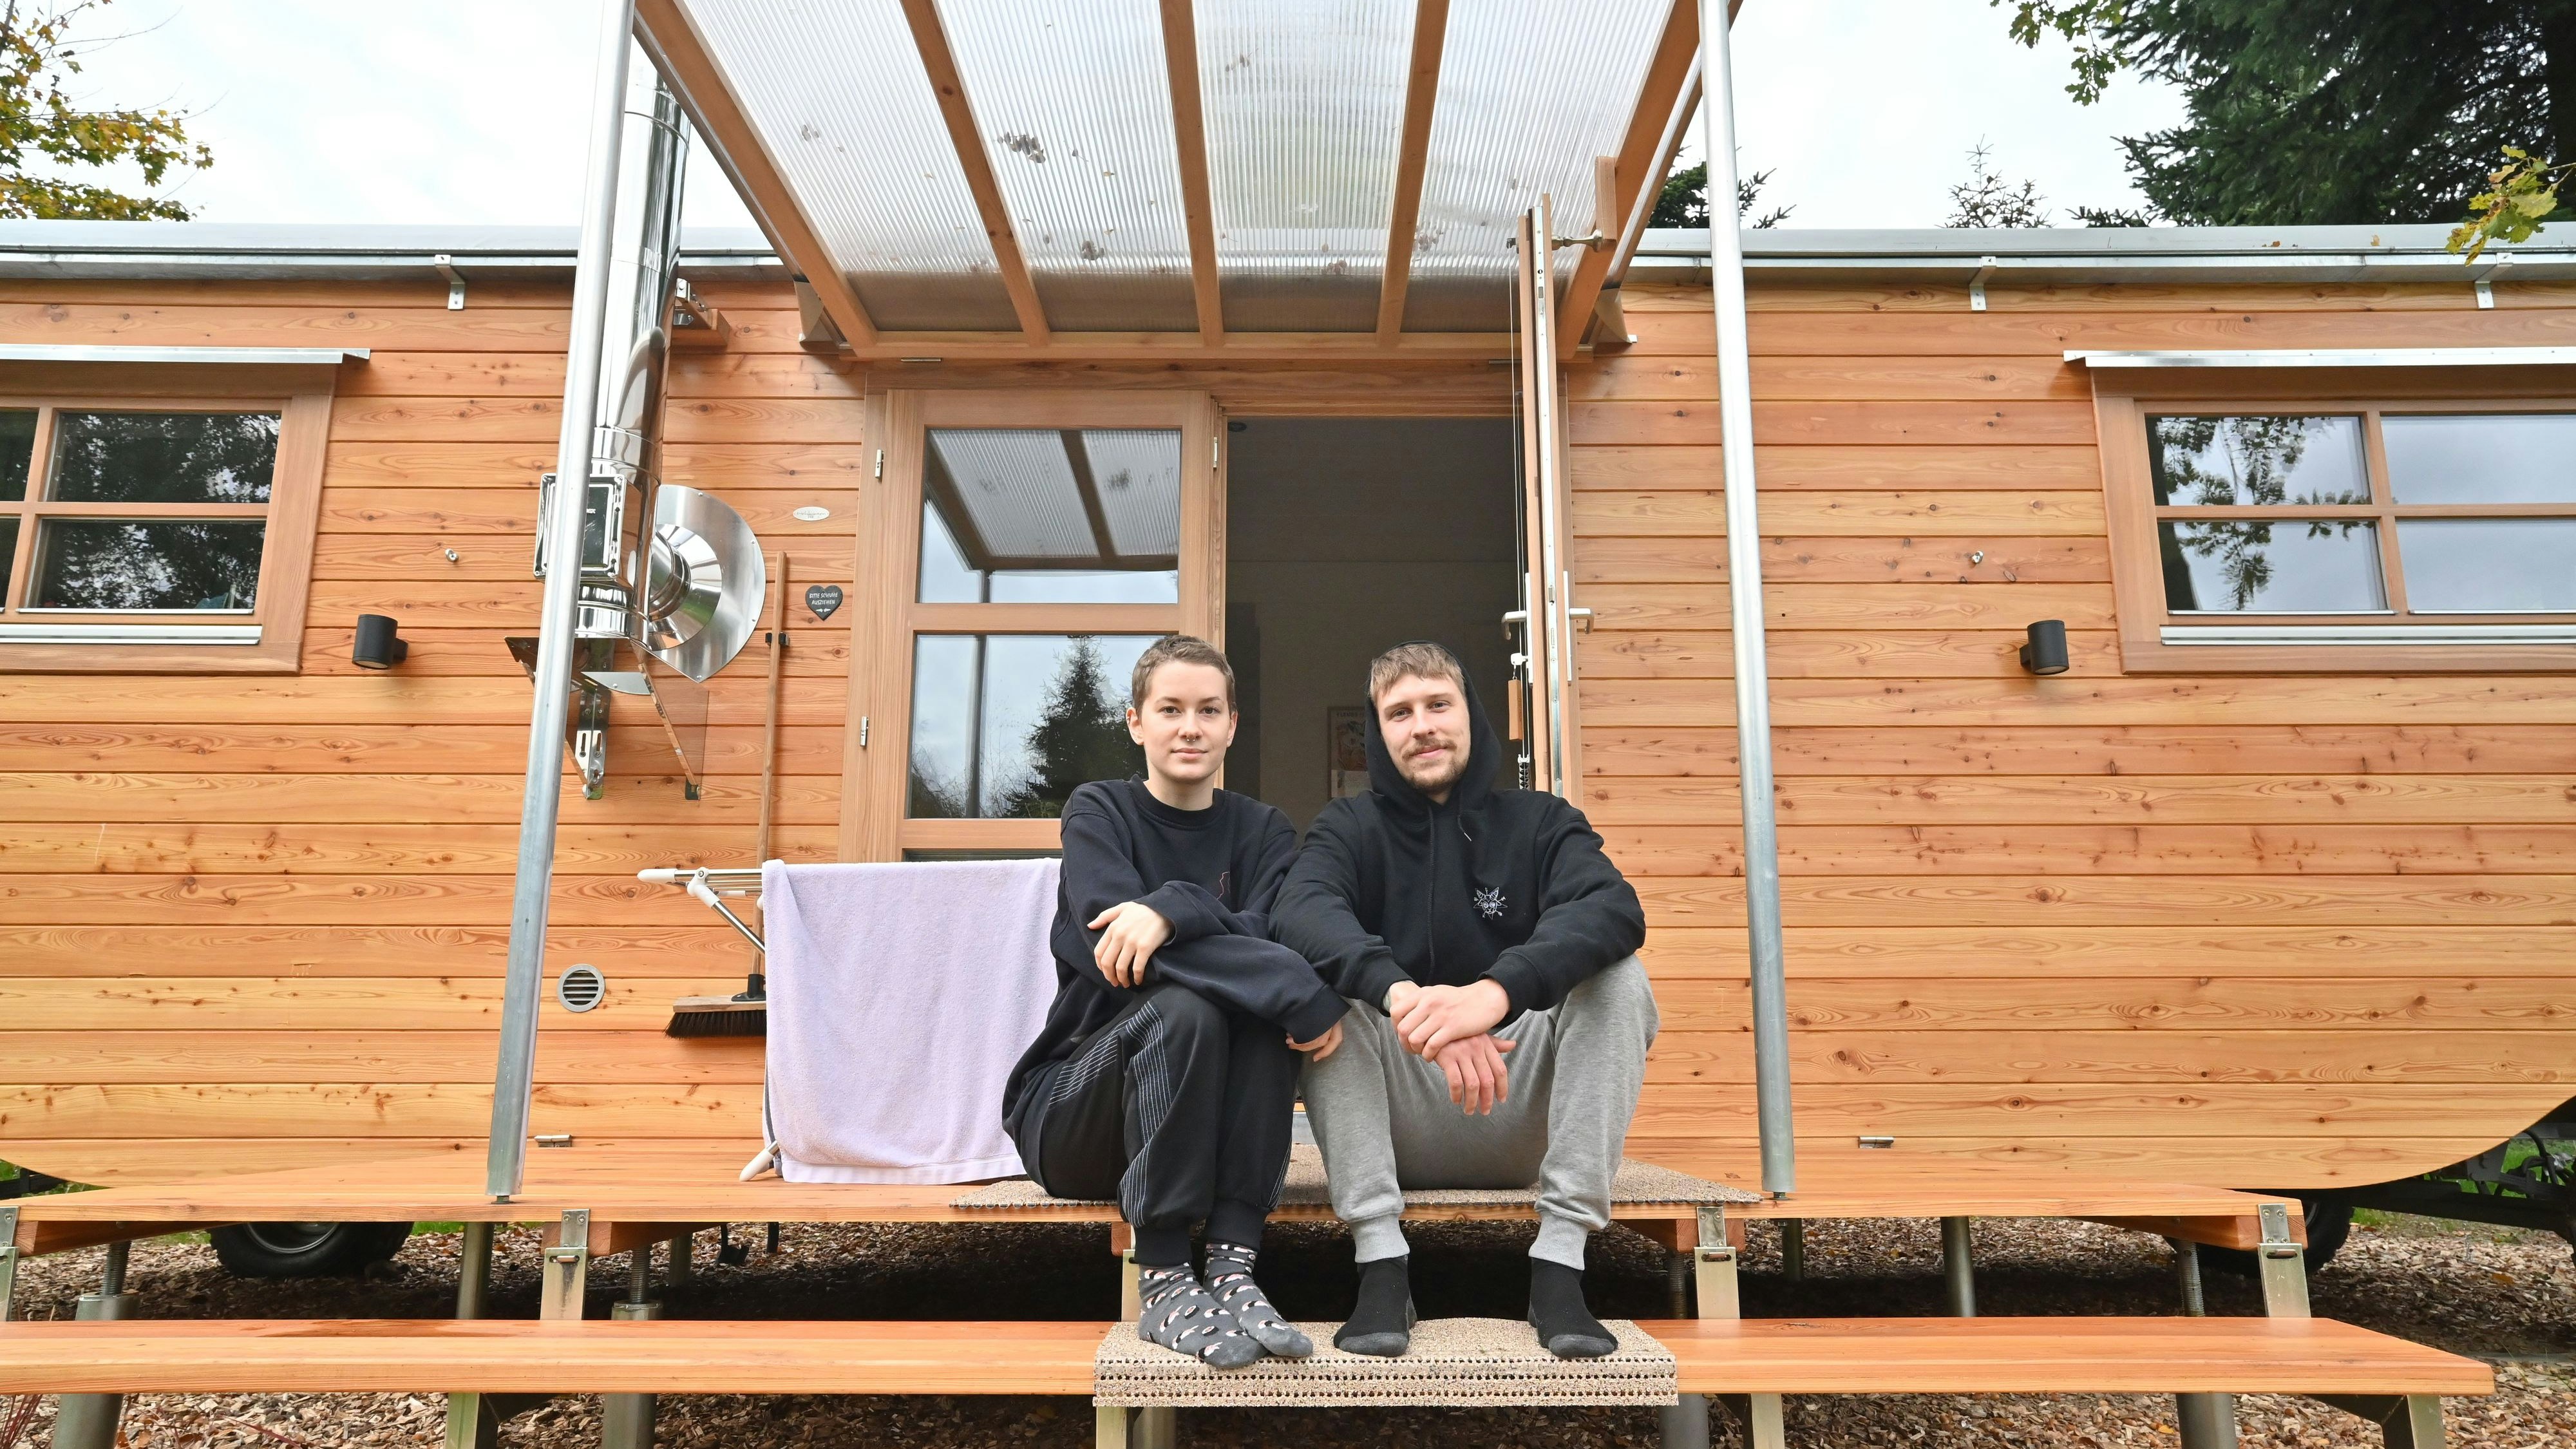 Begeistert: Stella Möller und Noel Schlegel sind aus Thüringen angereist, um im Tiny-House für eine Woche auf Probe zu wohnen. Foto: Vorwerk